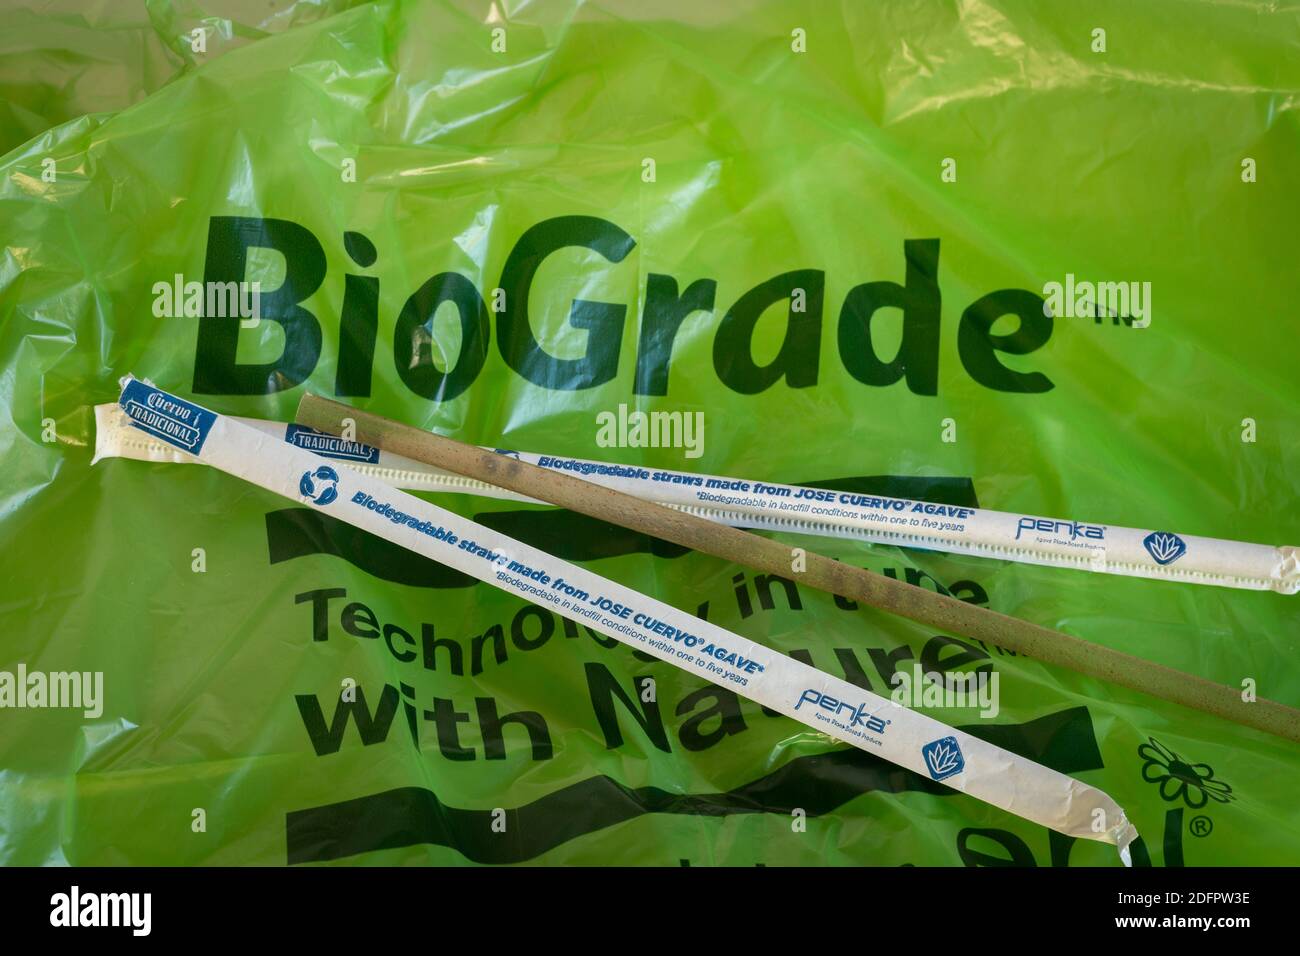 Pajuelas biodegradables hechas de Jose Cuervo Agave con una bolsa de basura BioGrade, USA Foto de stock